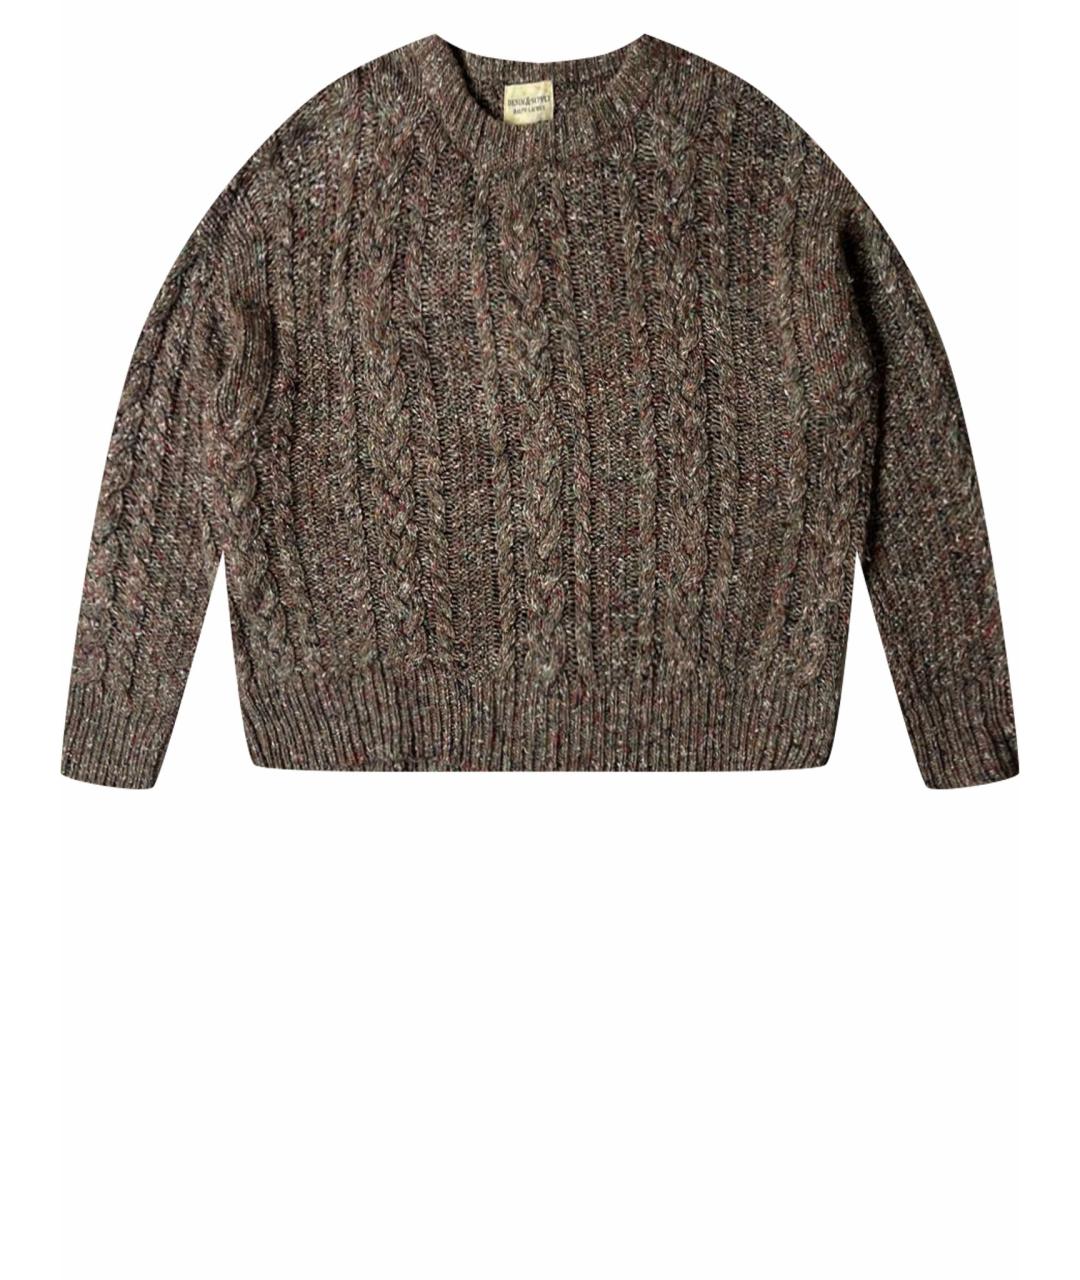 RALPH LAUREN DENIM & SUPPLY Коричневый шелковый джемпер / свитер, фото 1